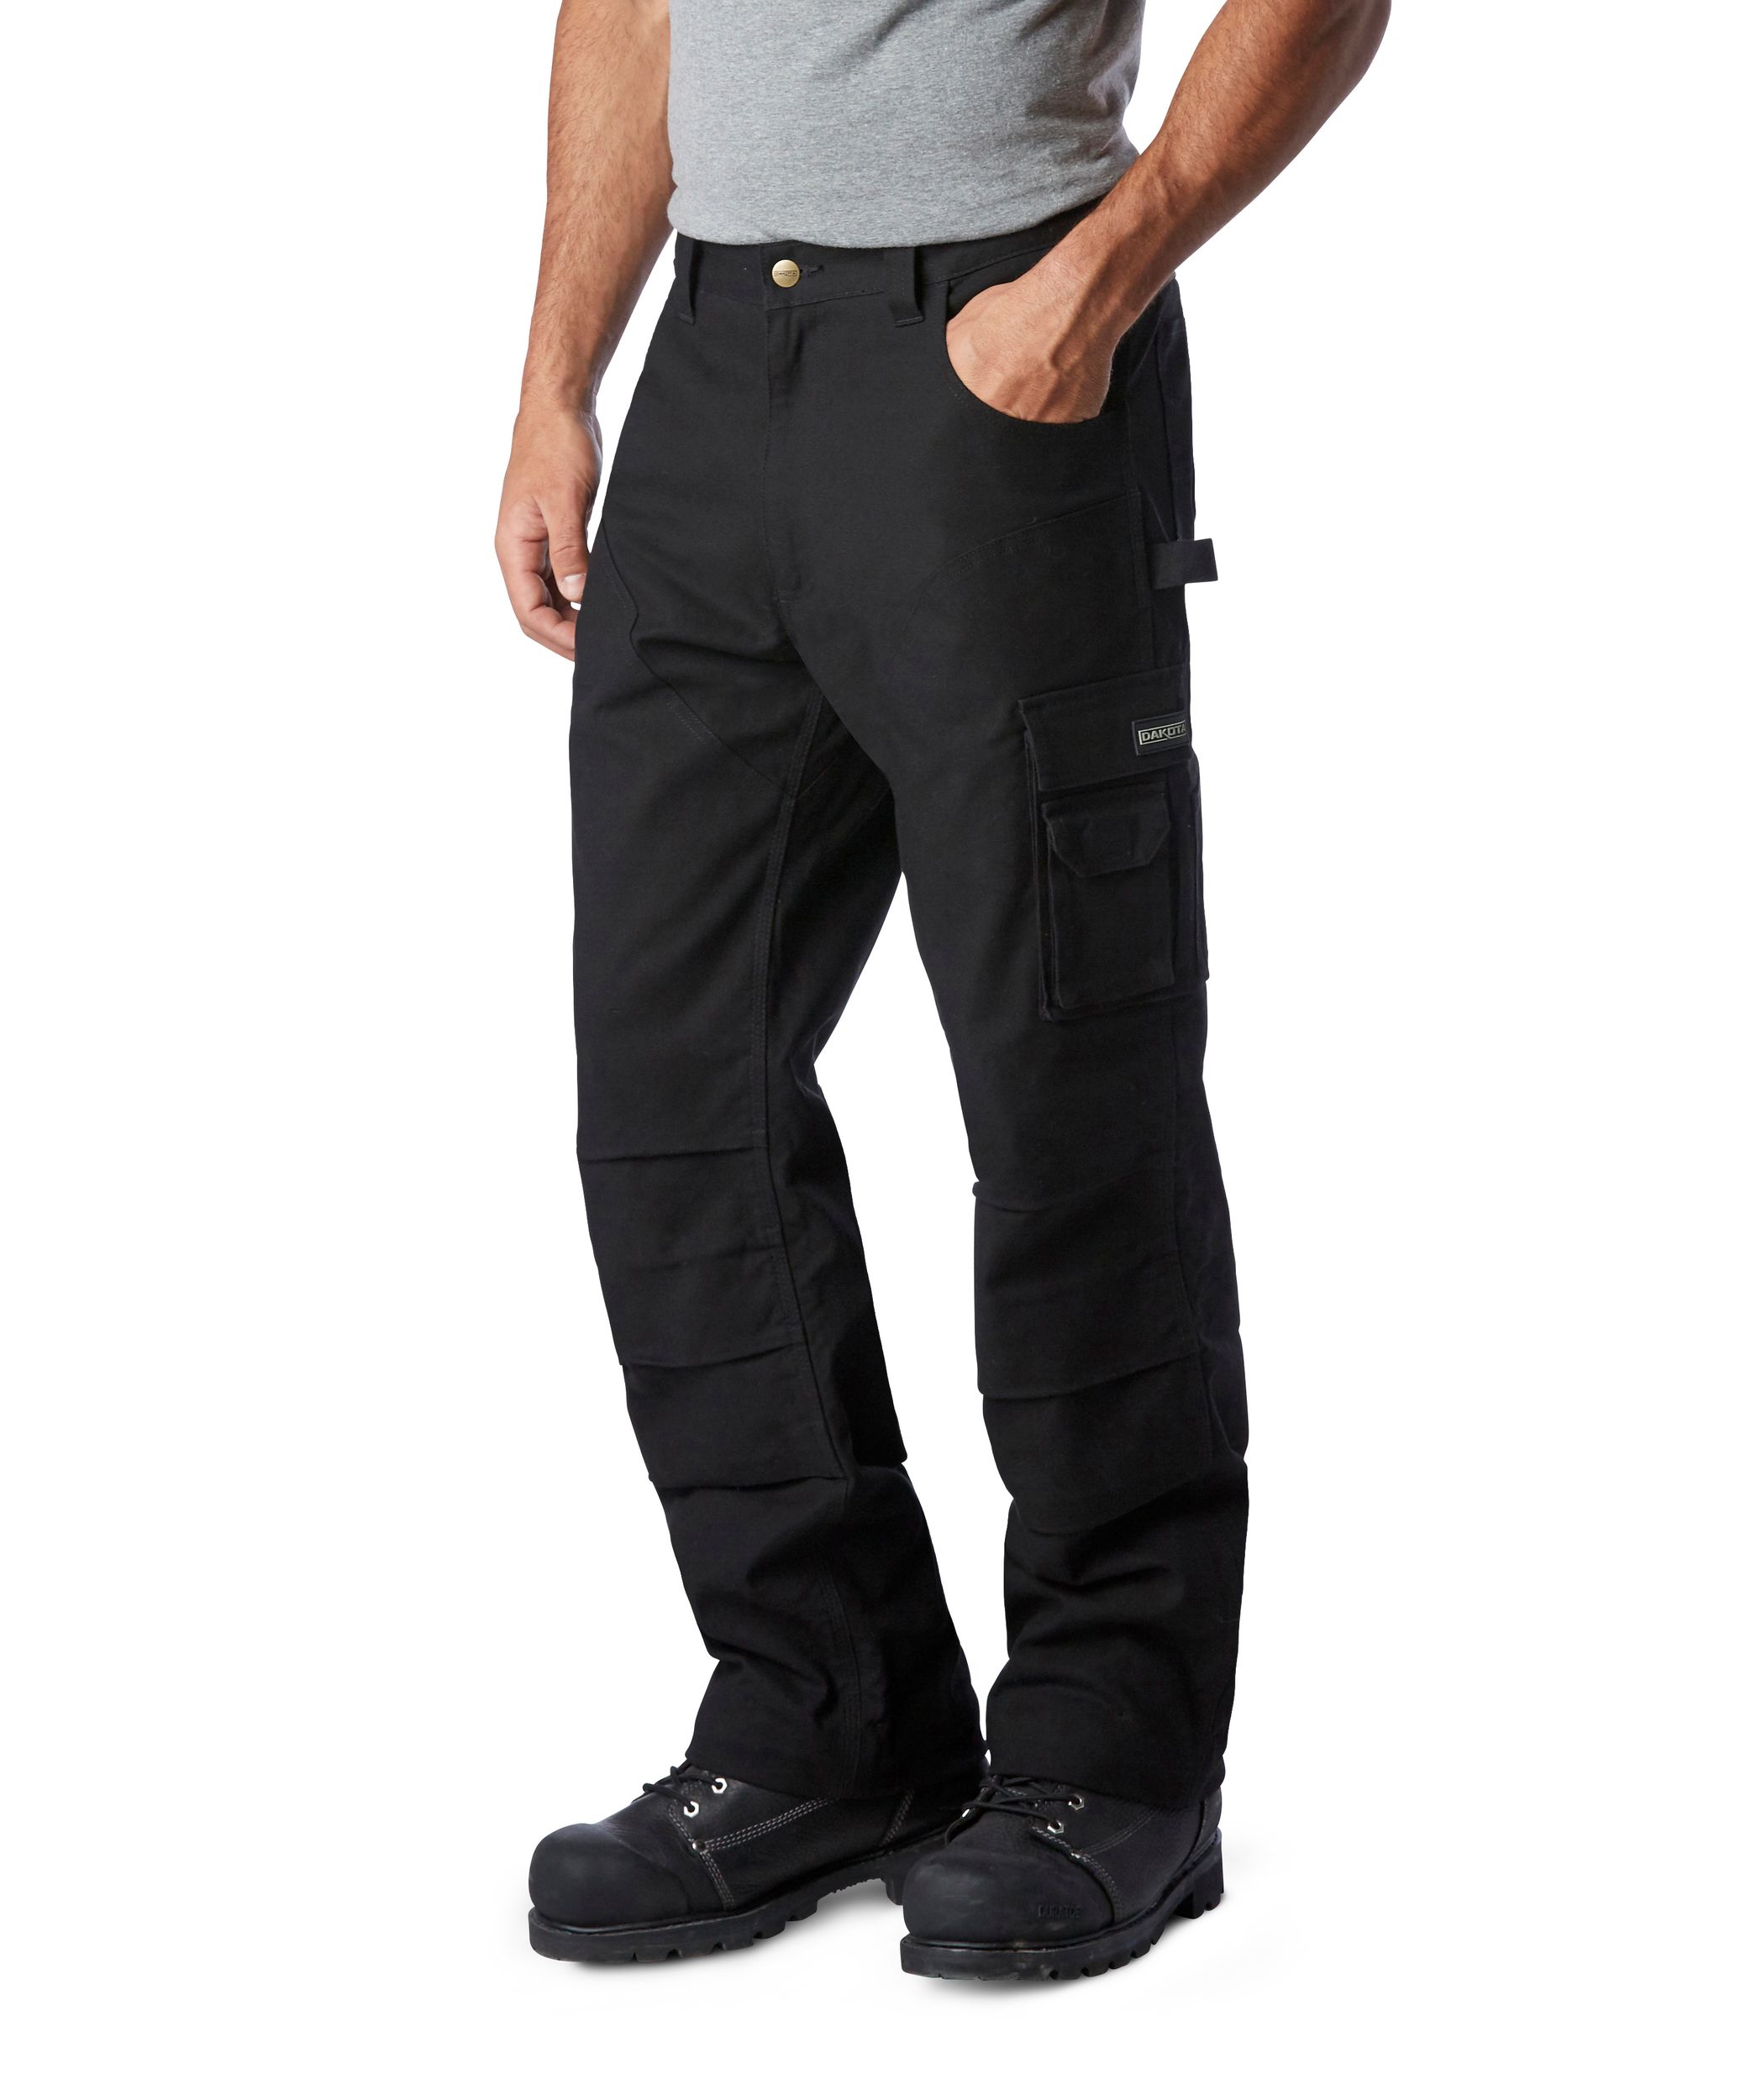 LEO Workwear Landcross Stretch Work Trousers  Safepol Workwear